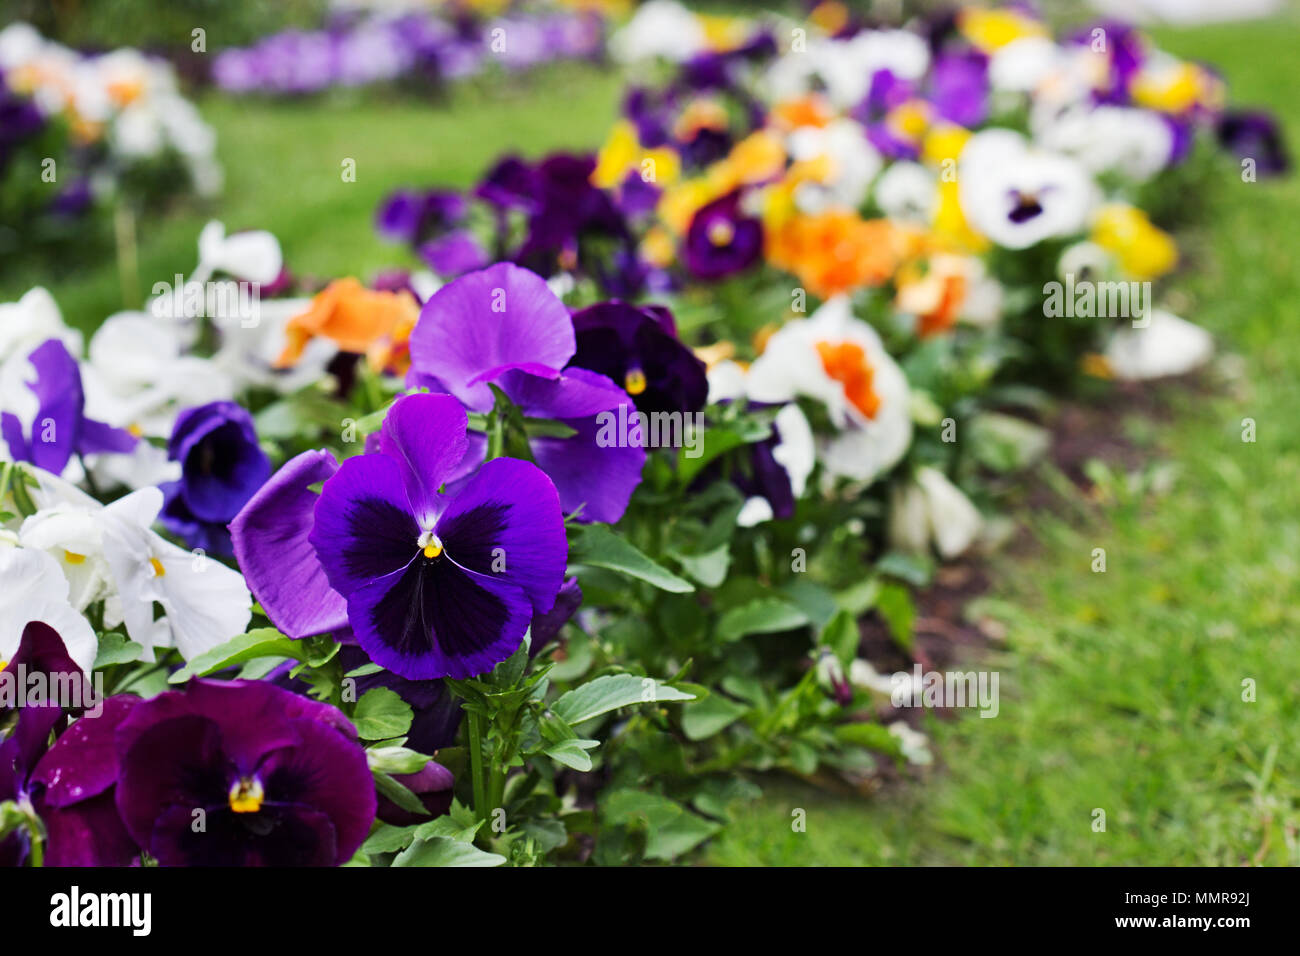 Parterre de fleurs multicolores de Viola tricolor ou kiss-me-quick (cœur-ease fleurs) au printemps, la beauté dans la nature Banque D'Images